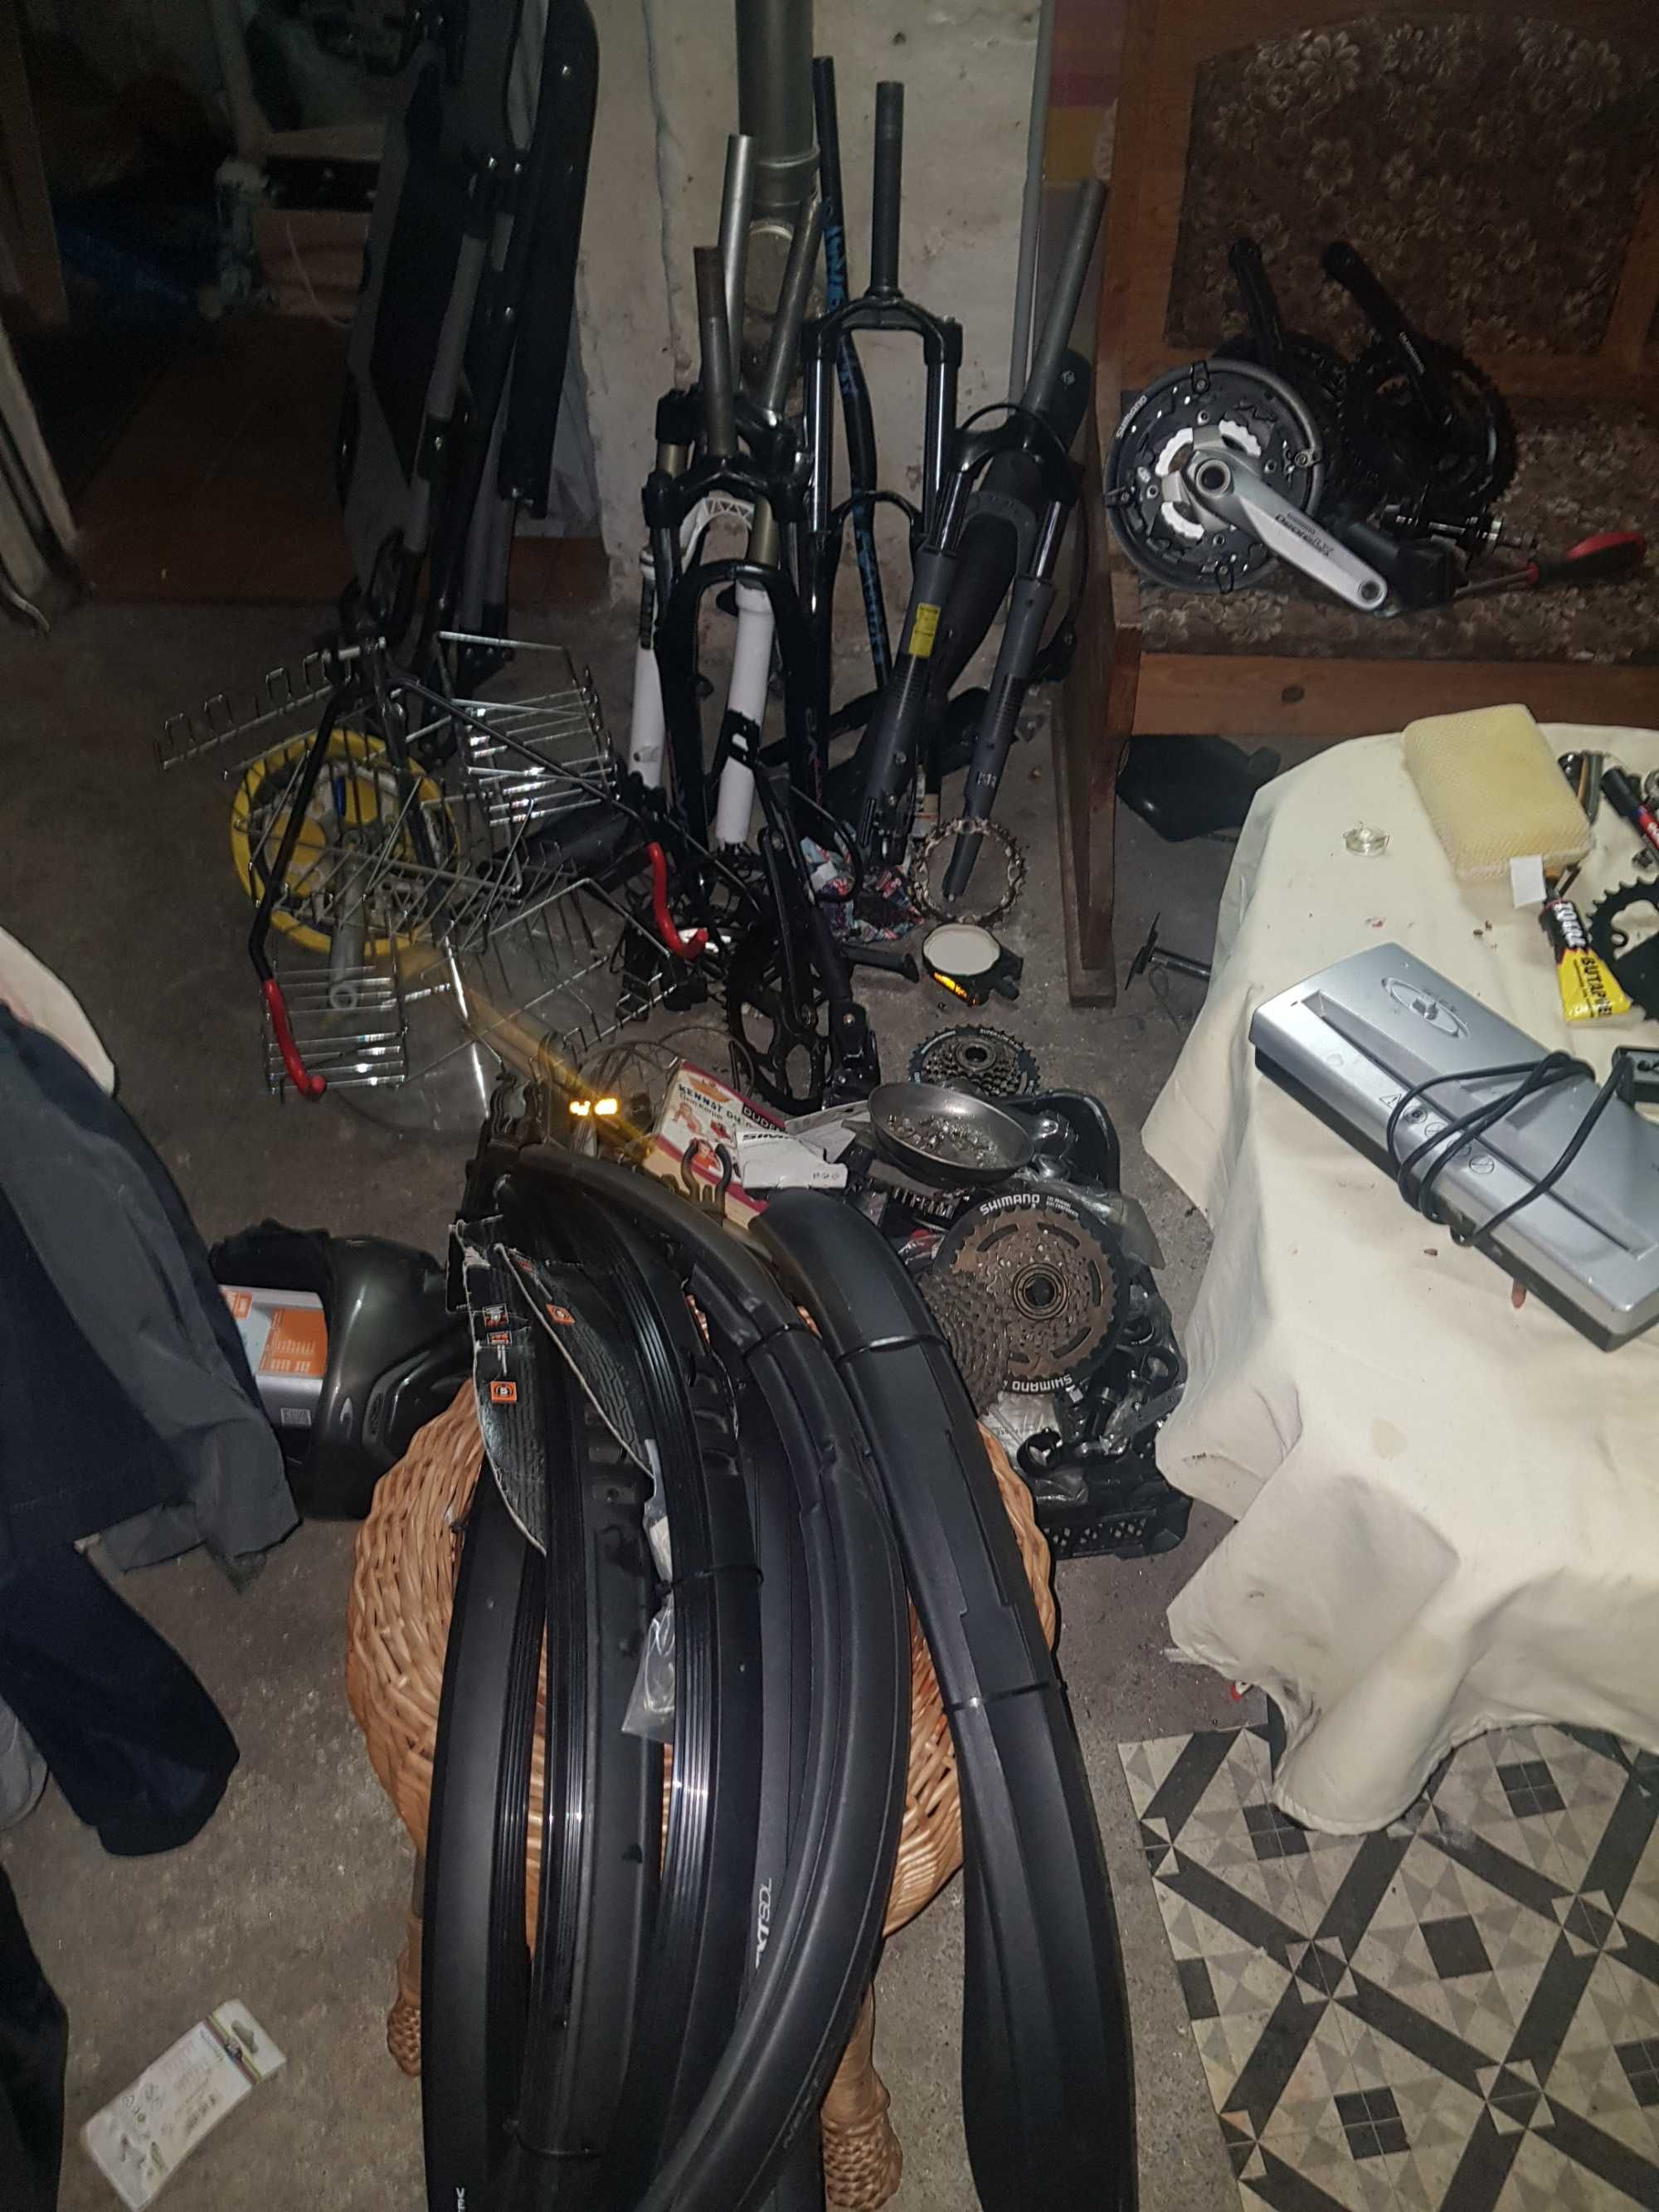 Narzędzia i części po likwidacji serwisu rowerowego